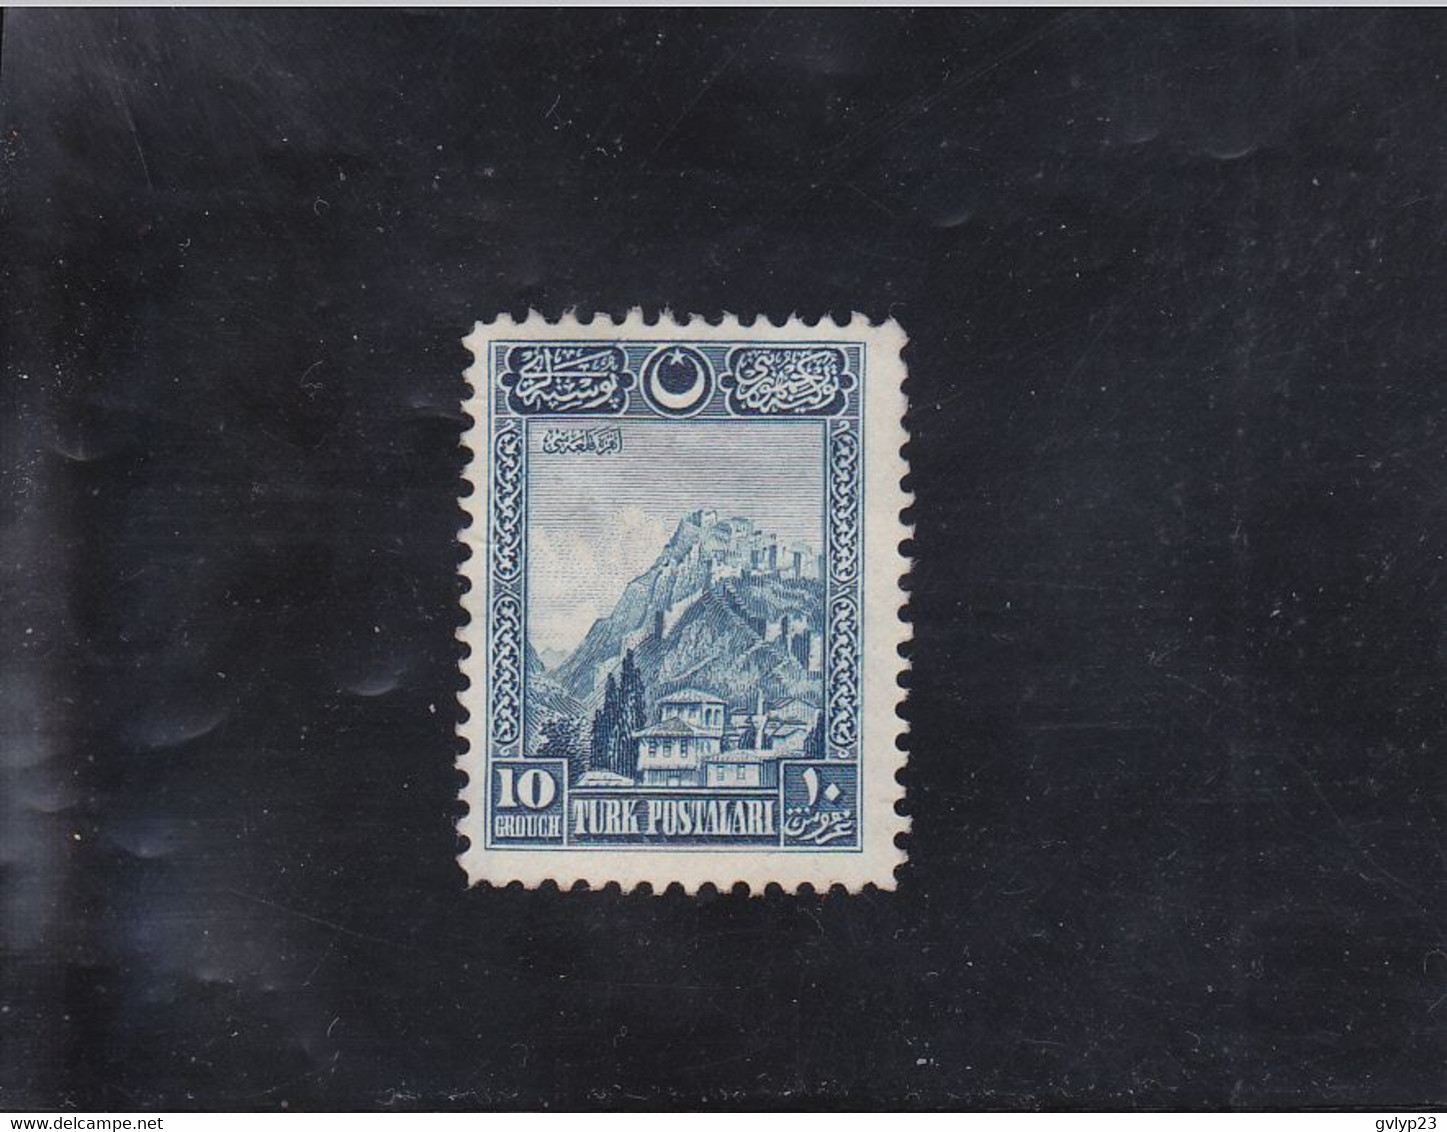 CITADELLE D'ANKARA 10 GR BLEU NEUF * N°703 YVERT ET TELLIER 1926 - Unused Stamps